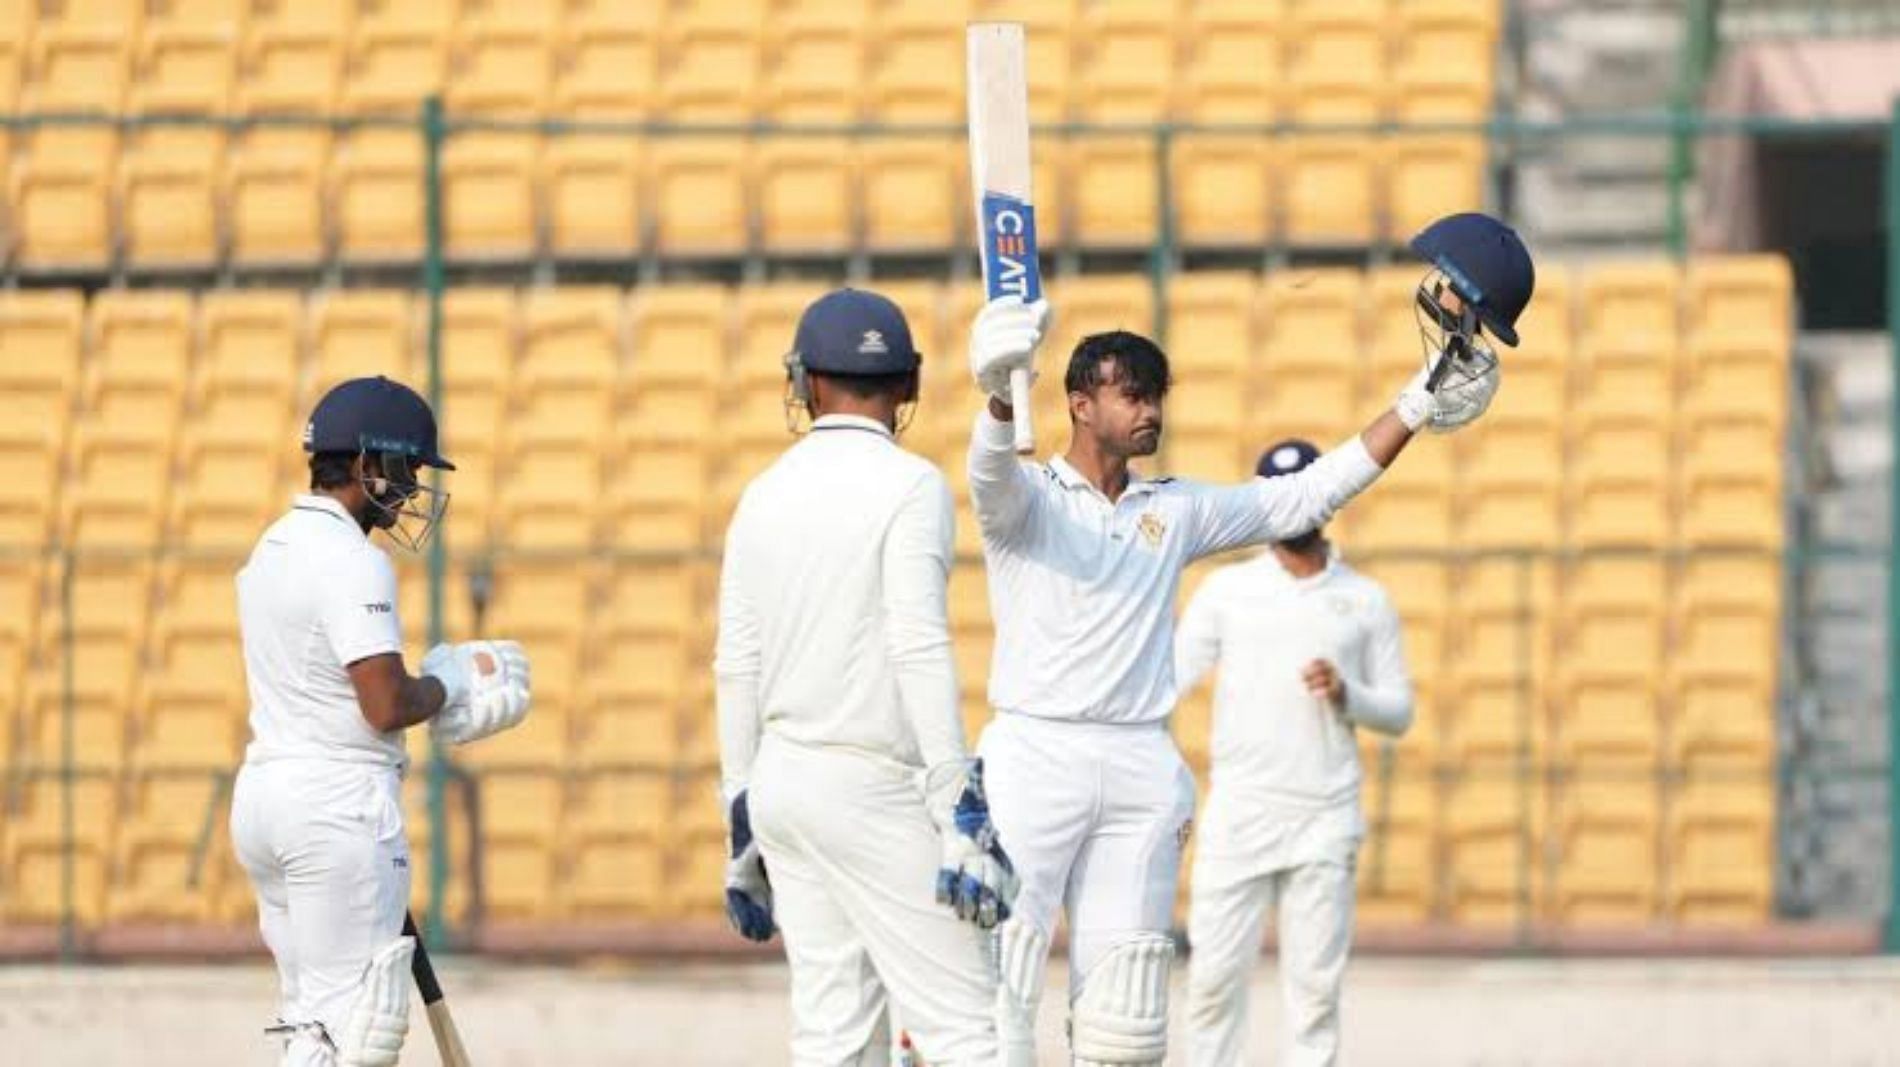 Ranji Trophy 2022-23 semi-finals Day 2 Mayank Agarwal hits 249 as Karnataka post 407 against Saurashtra